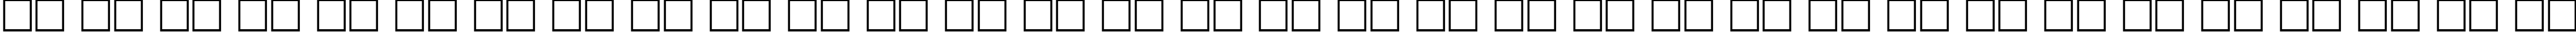 Пример написания русского алфавита шрифтом font162